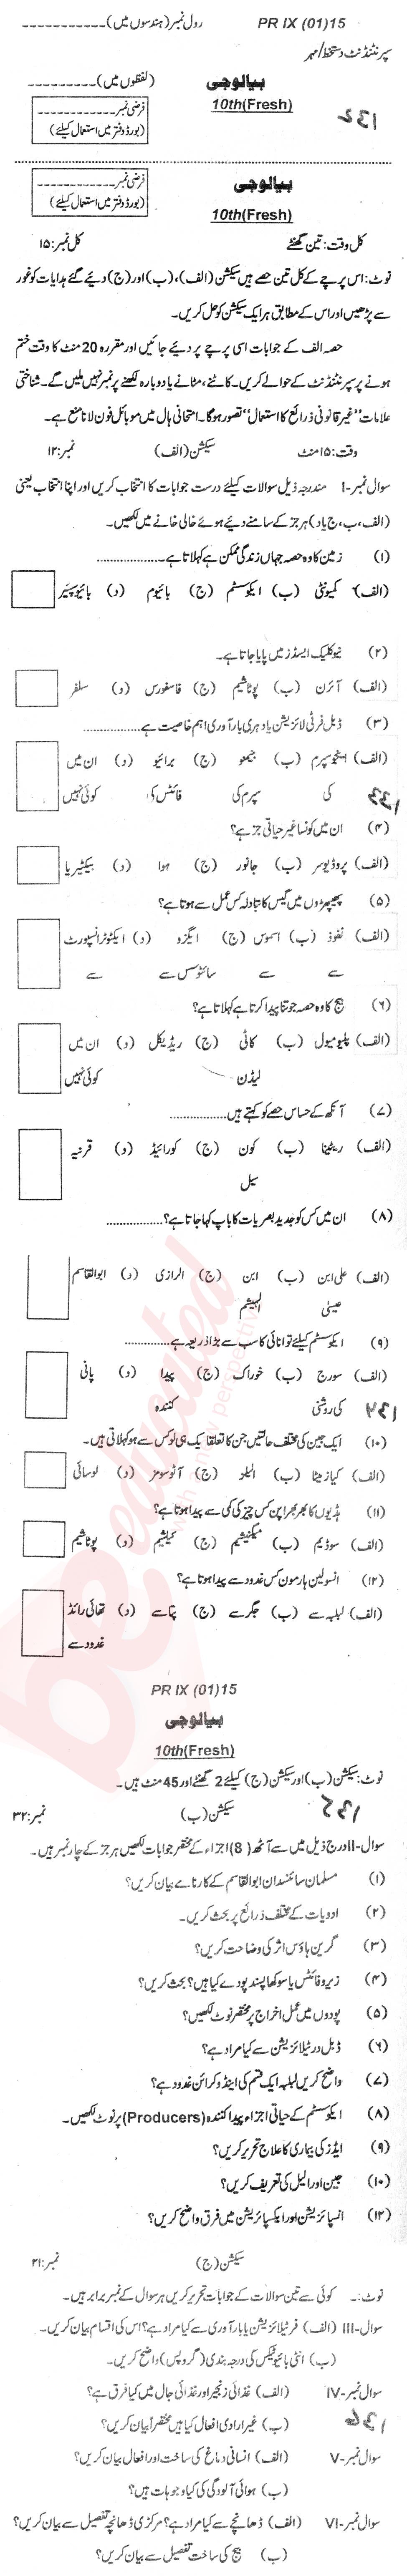 Biology 10th Urdu Medium Past Paper Group 1 BISE Swat 2015